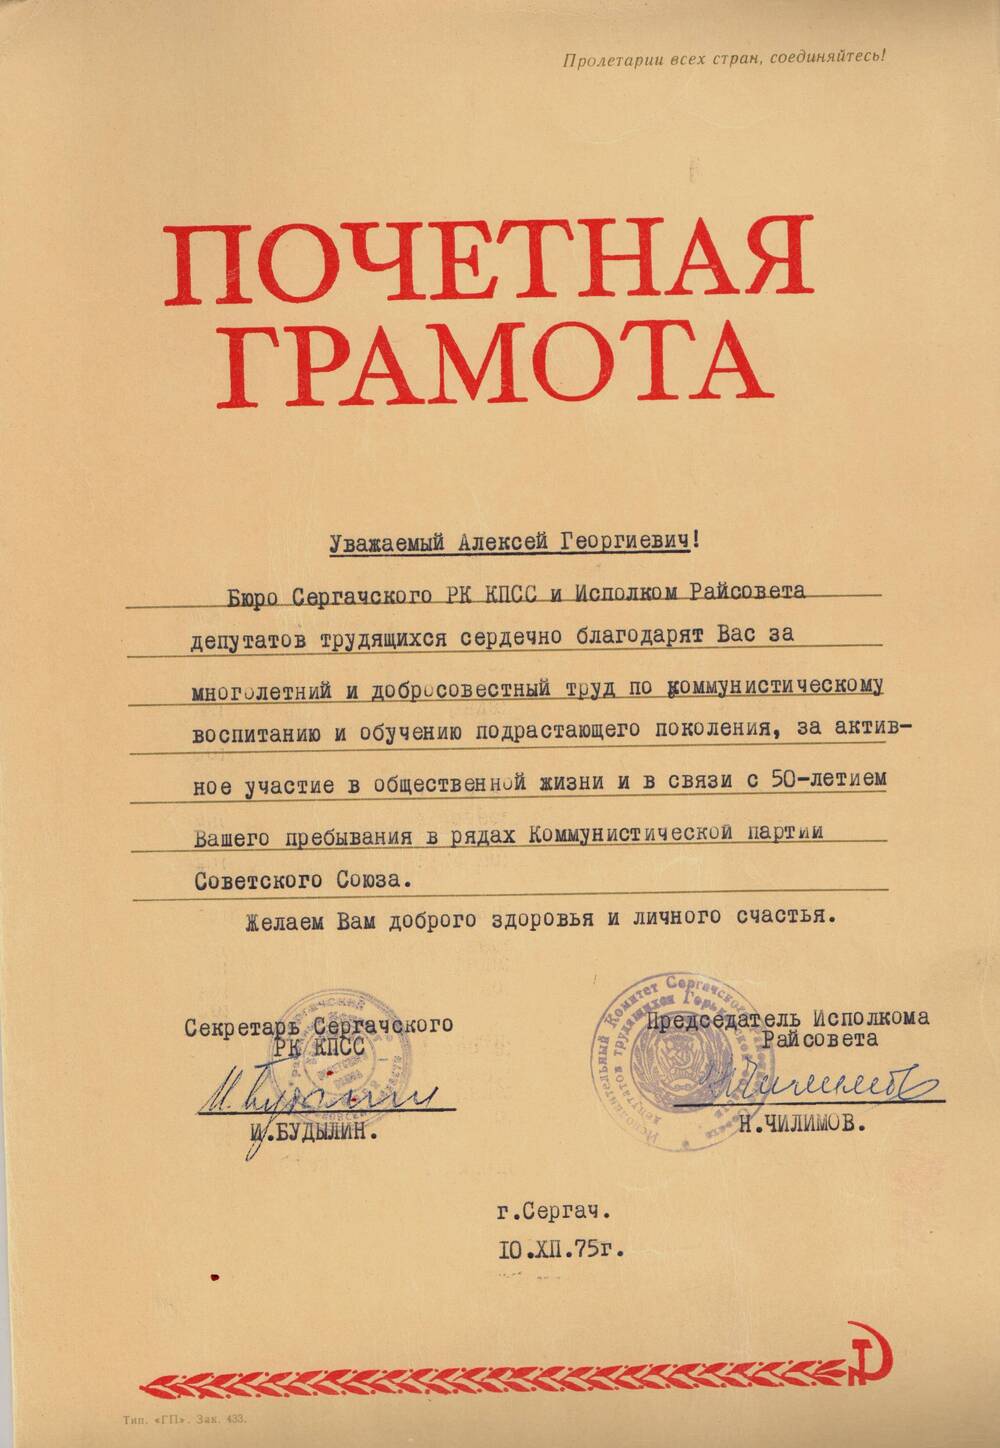 Грамота почетная Грошева А.Г за активное участие в общественной жизни. 1975 г.